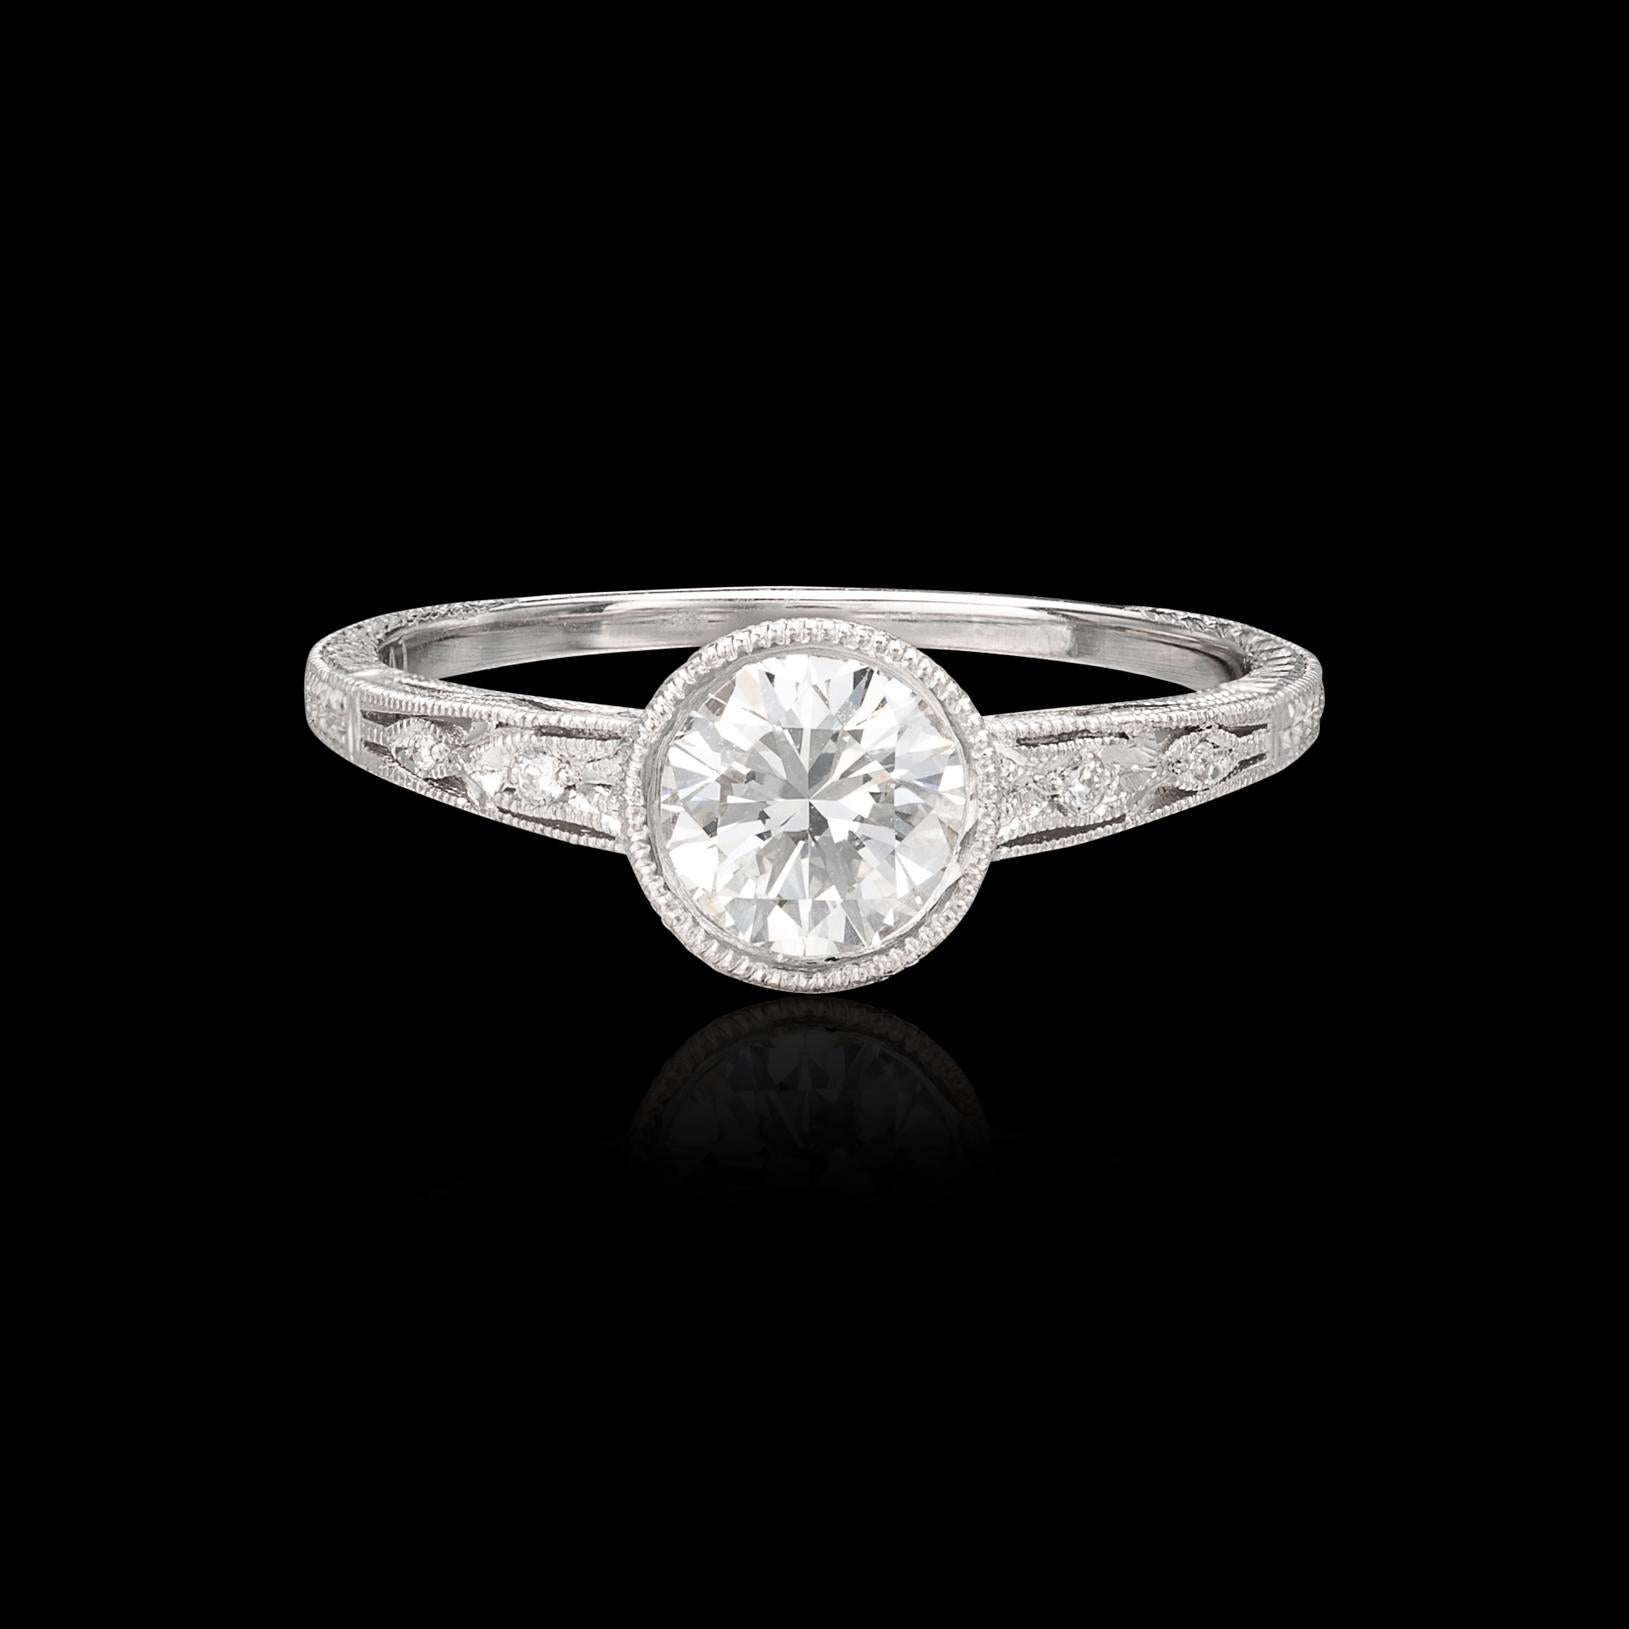 L'alliance du design Art déco classique et de l'artisanat moderne. Ce bijou en platine est orné d'un diamant rond de 0,93 carat taillé en brillant et serti de manière experte pour mettre en valeur son magnifique grade GIA F/SI1. Cette magnifique